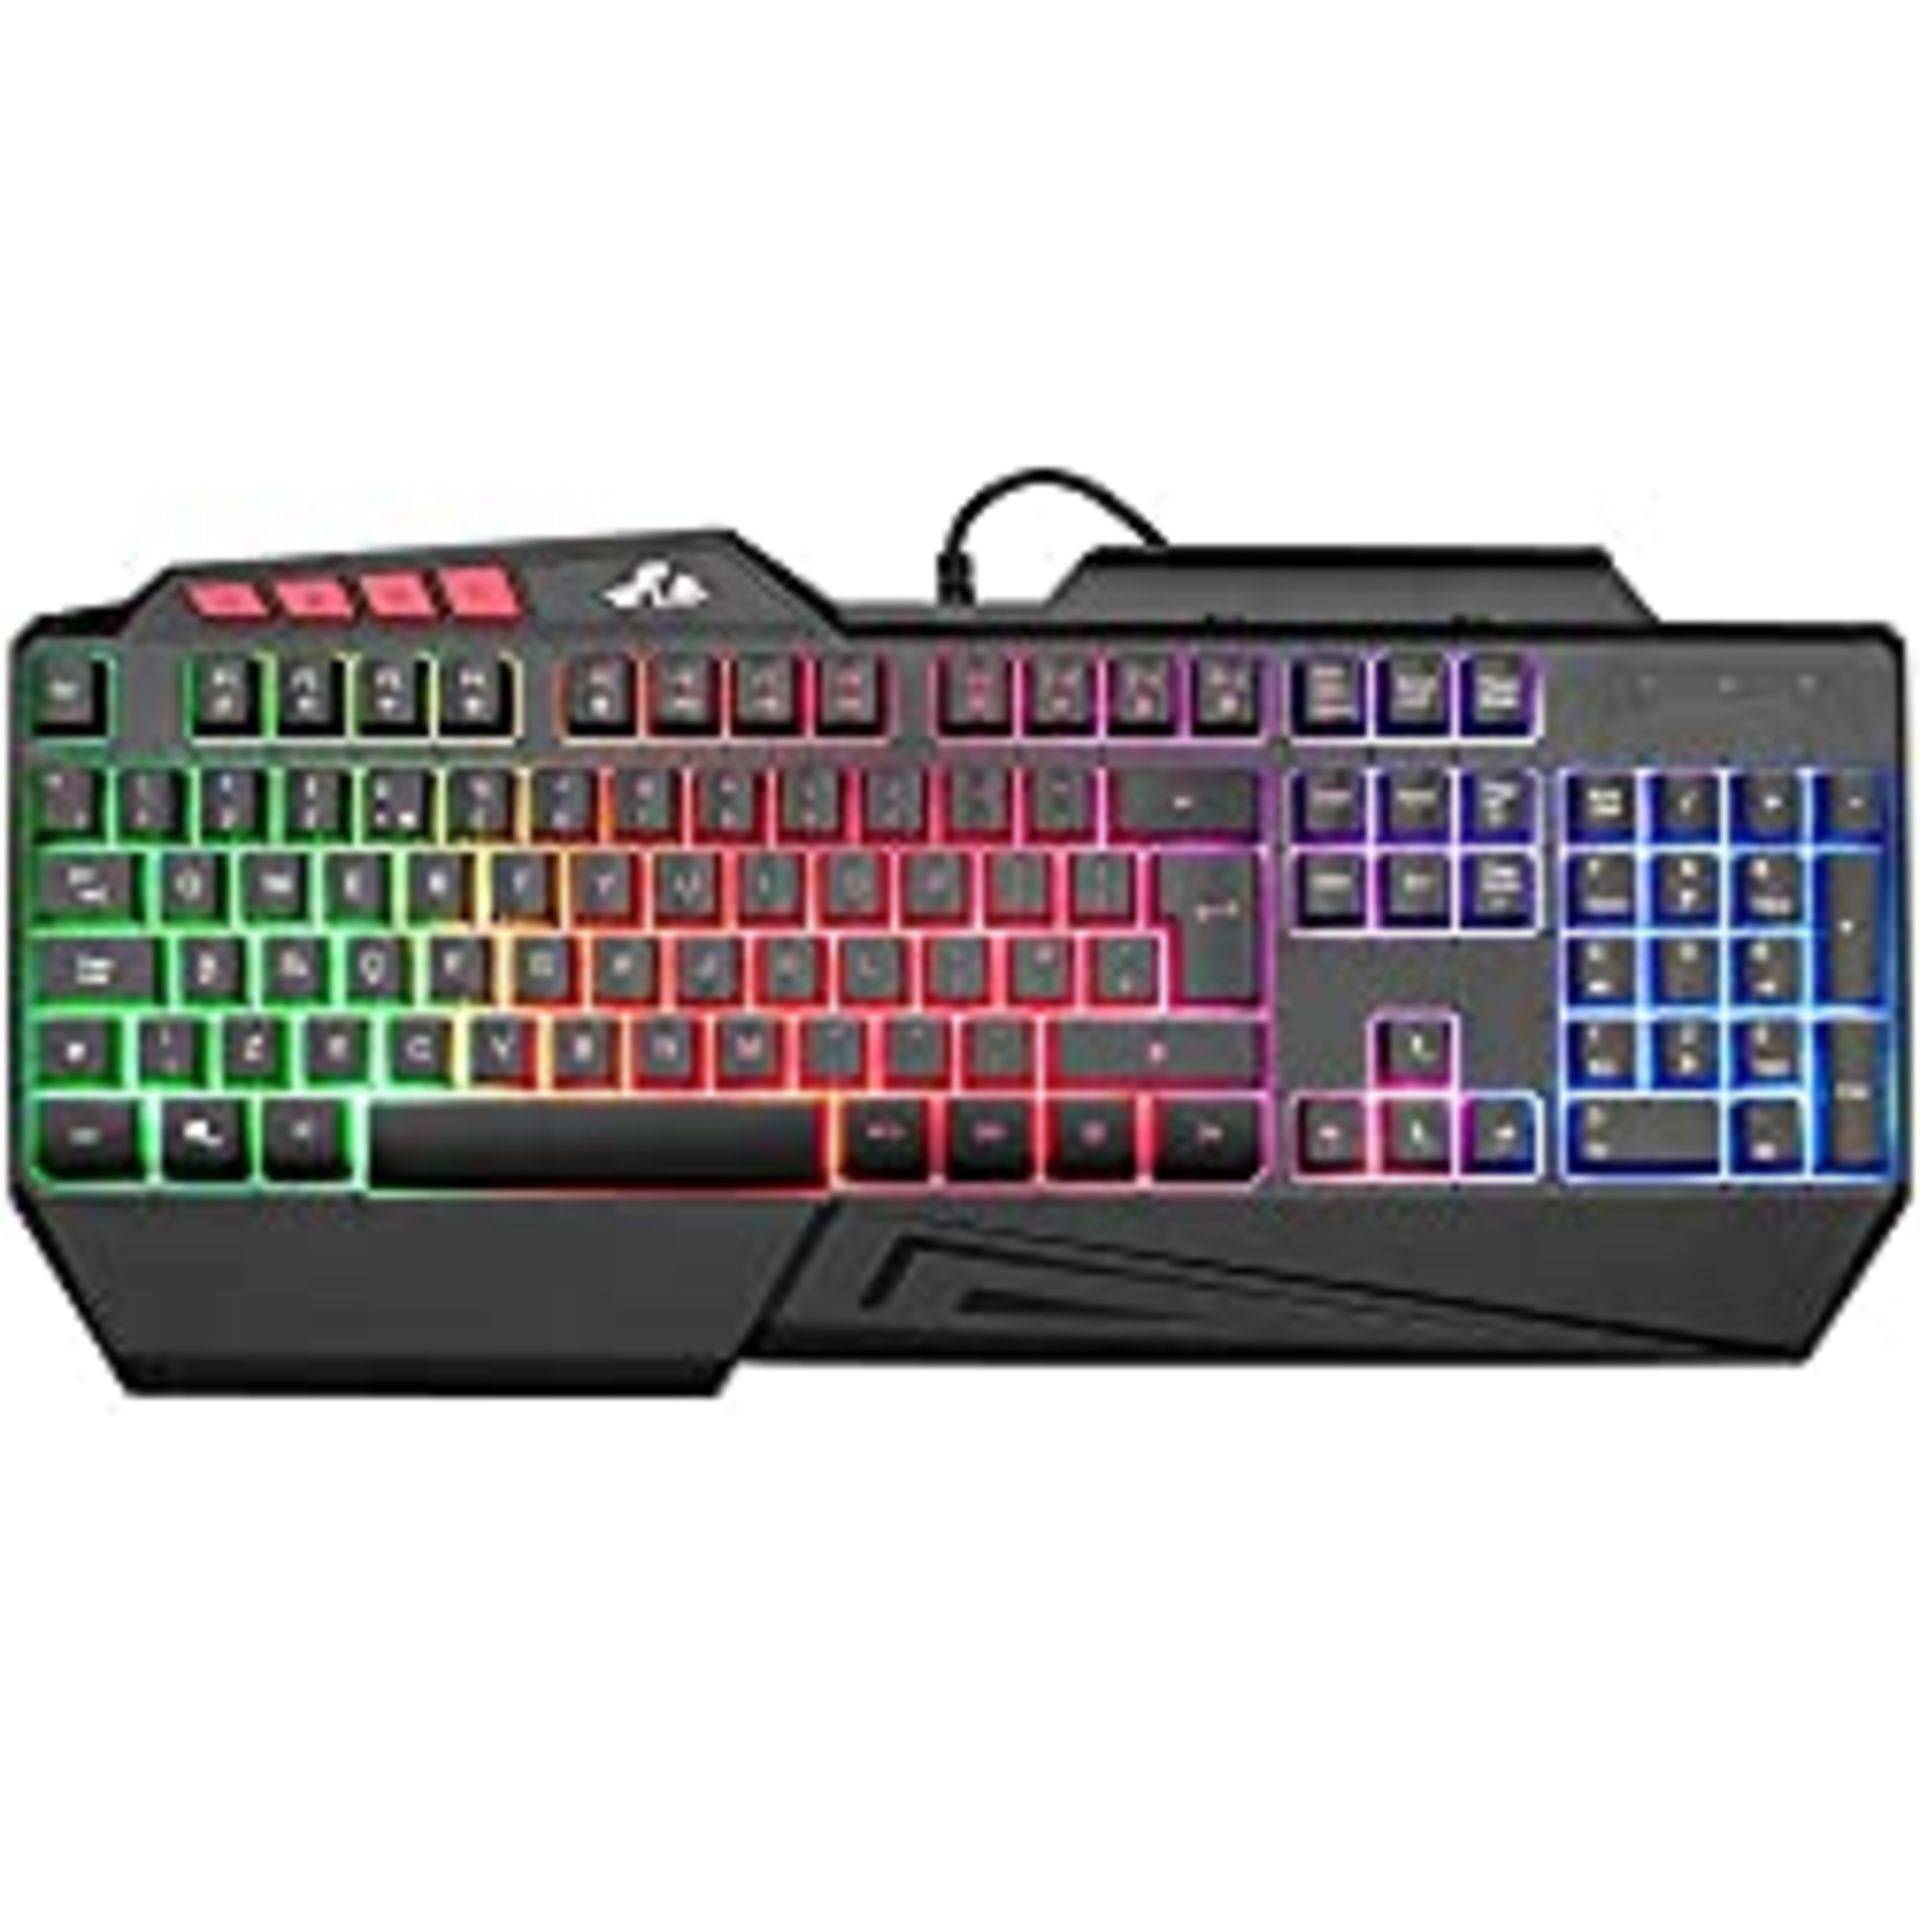 RRP £17.99 Rii RK900 Large Size 7 Colour LED Rainbow Gaming Keyboard UK Layout - Black